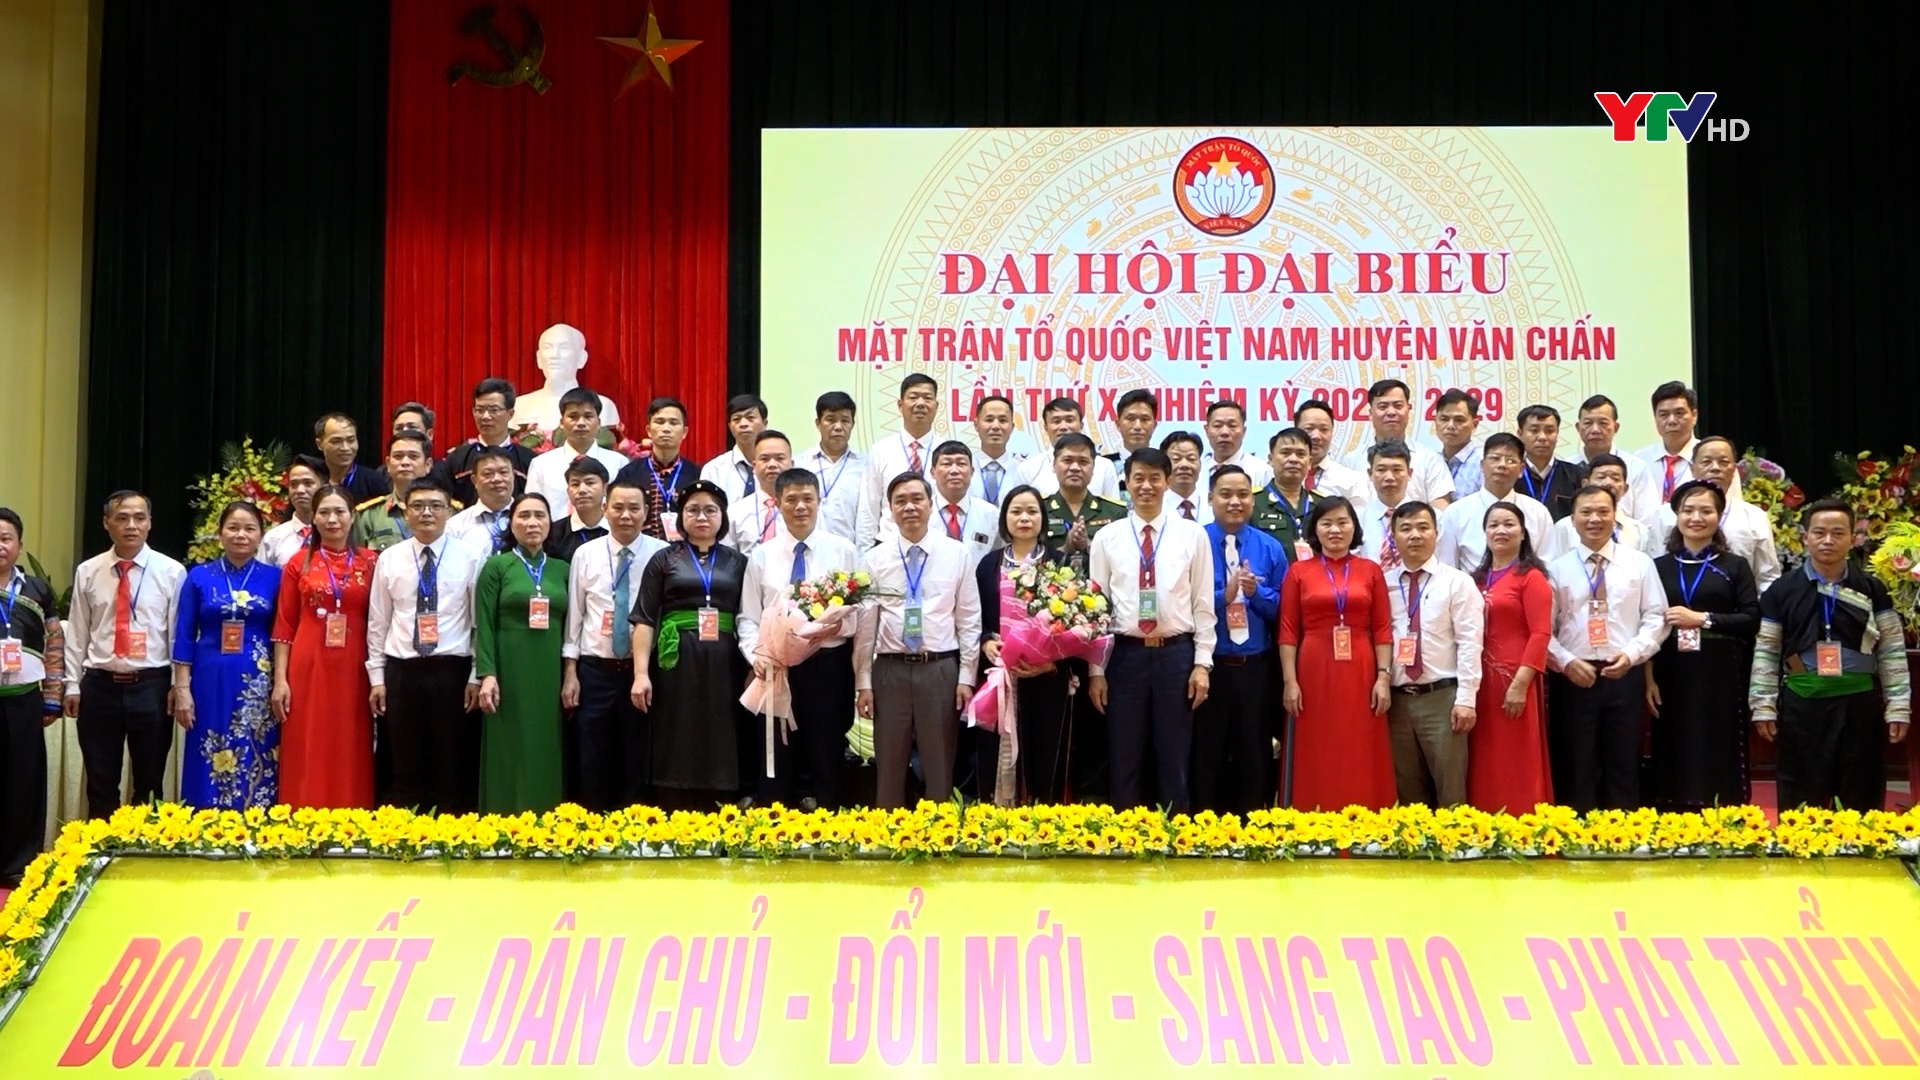 Đại hội đại biểu MTTQ huyện Văn Chấn  lần thứ X thành công tốt đẹp